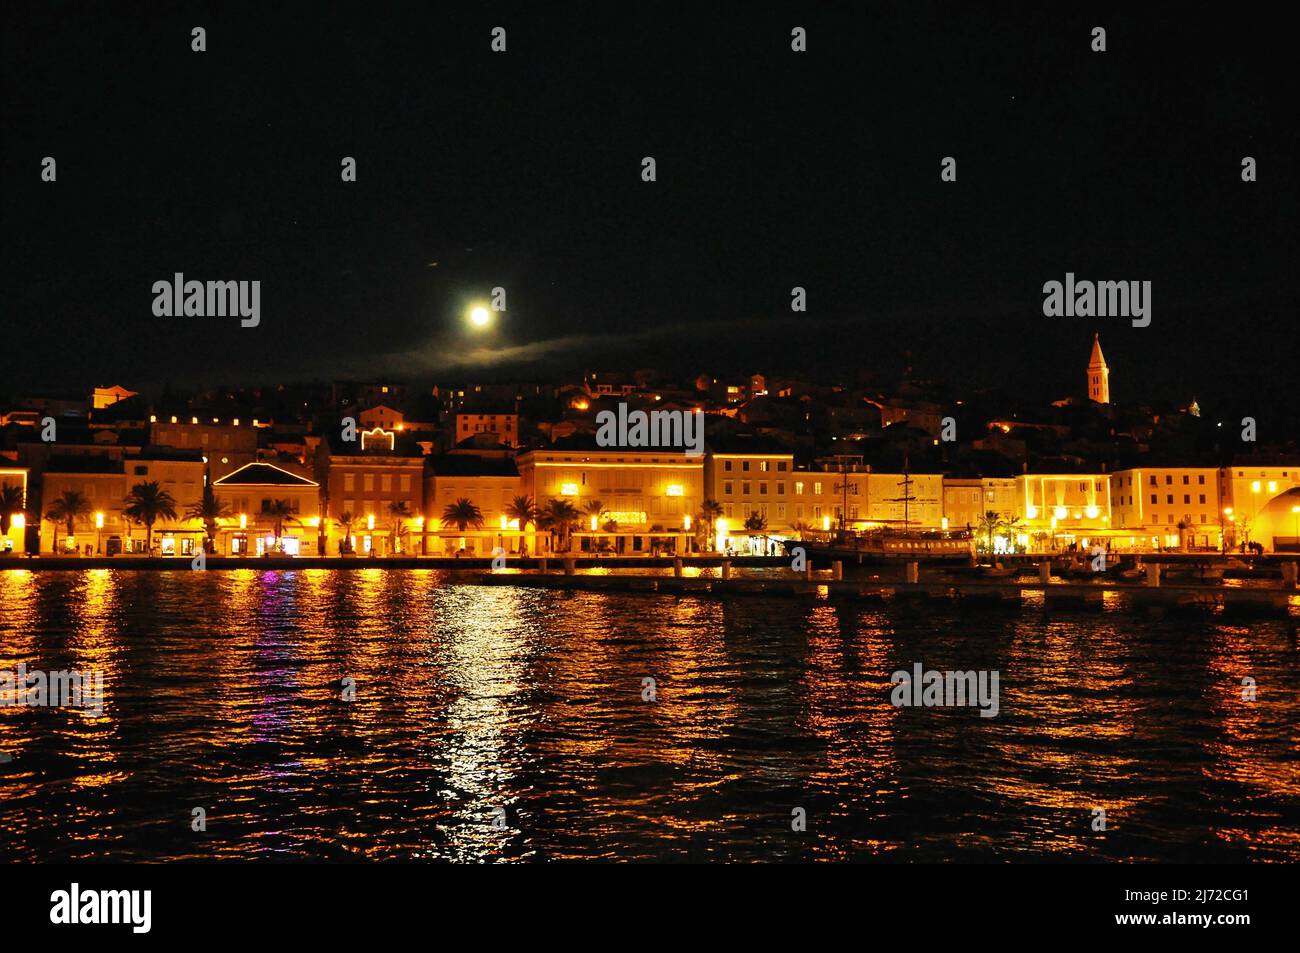 Die Stadt Mali Losinj in der Nachtszene, die vom Meer aufgenommen wurde, sodass das Licht auf das Meer reflektiert. Mali Losinj Küste bei Nacht, Kroatien berühmtes touristisches Ziel. Stockfoto